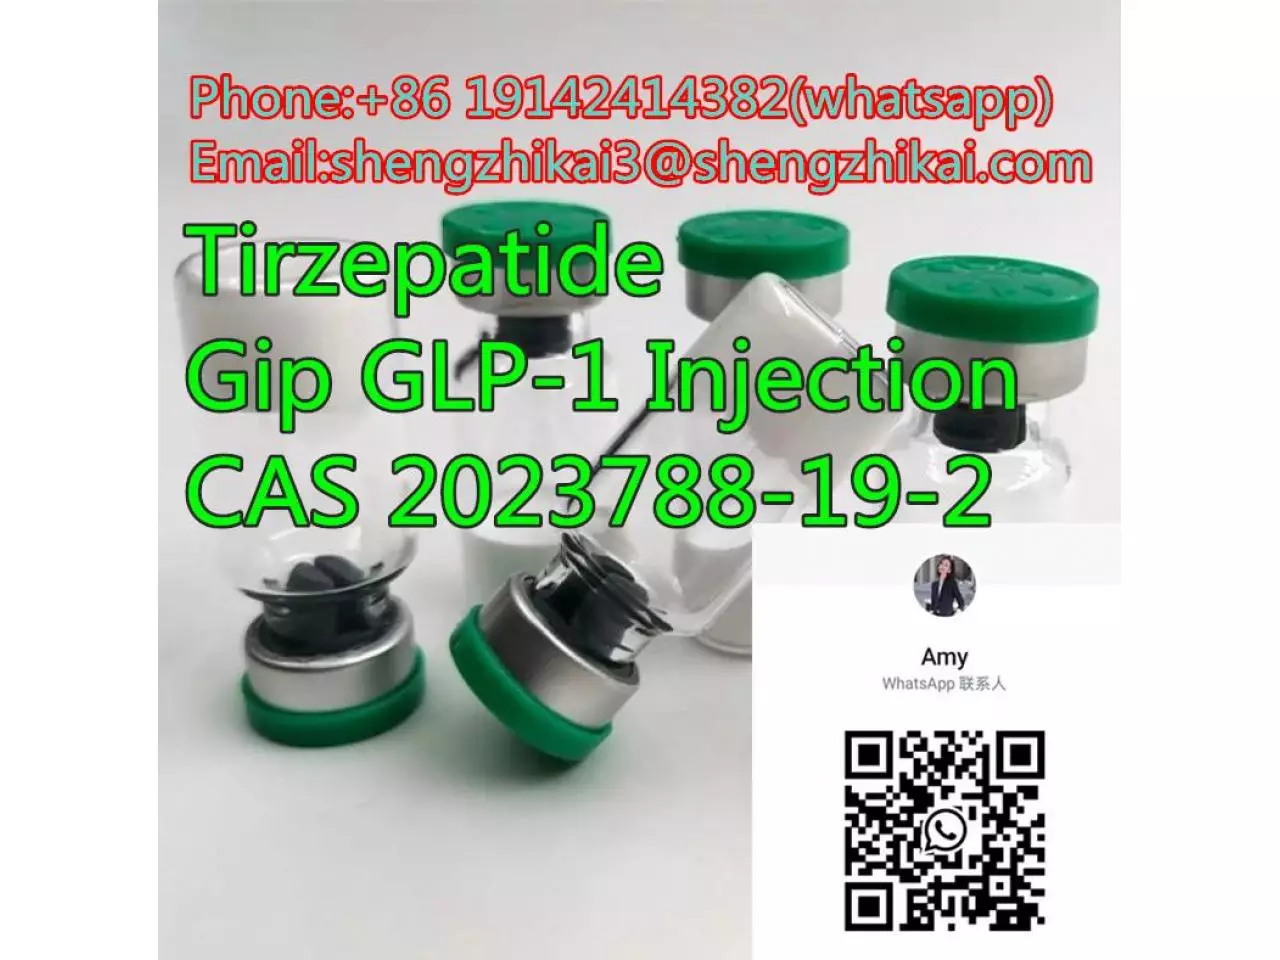 مصنع توريد Tirzepatide Gip\GLP-1 CAS 2023788-19-2 لتخفيف الوزن - 3/9